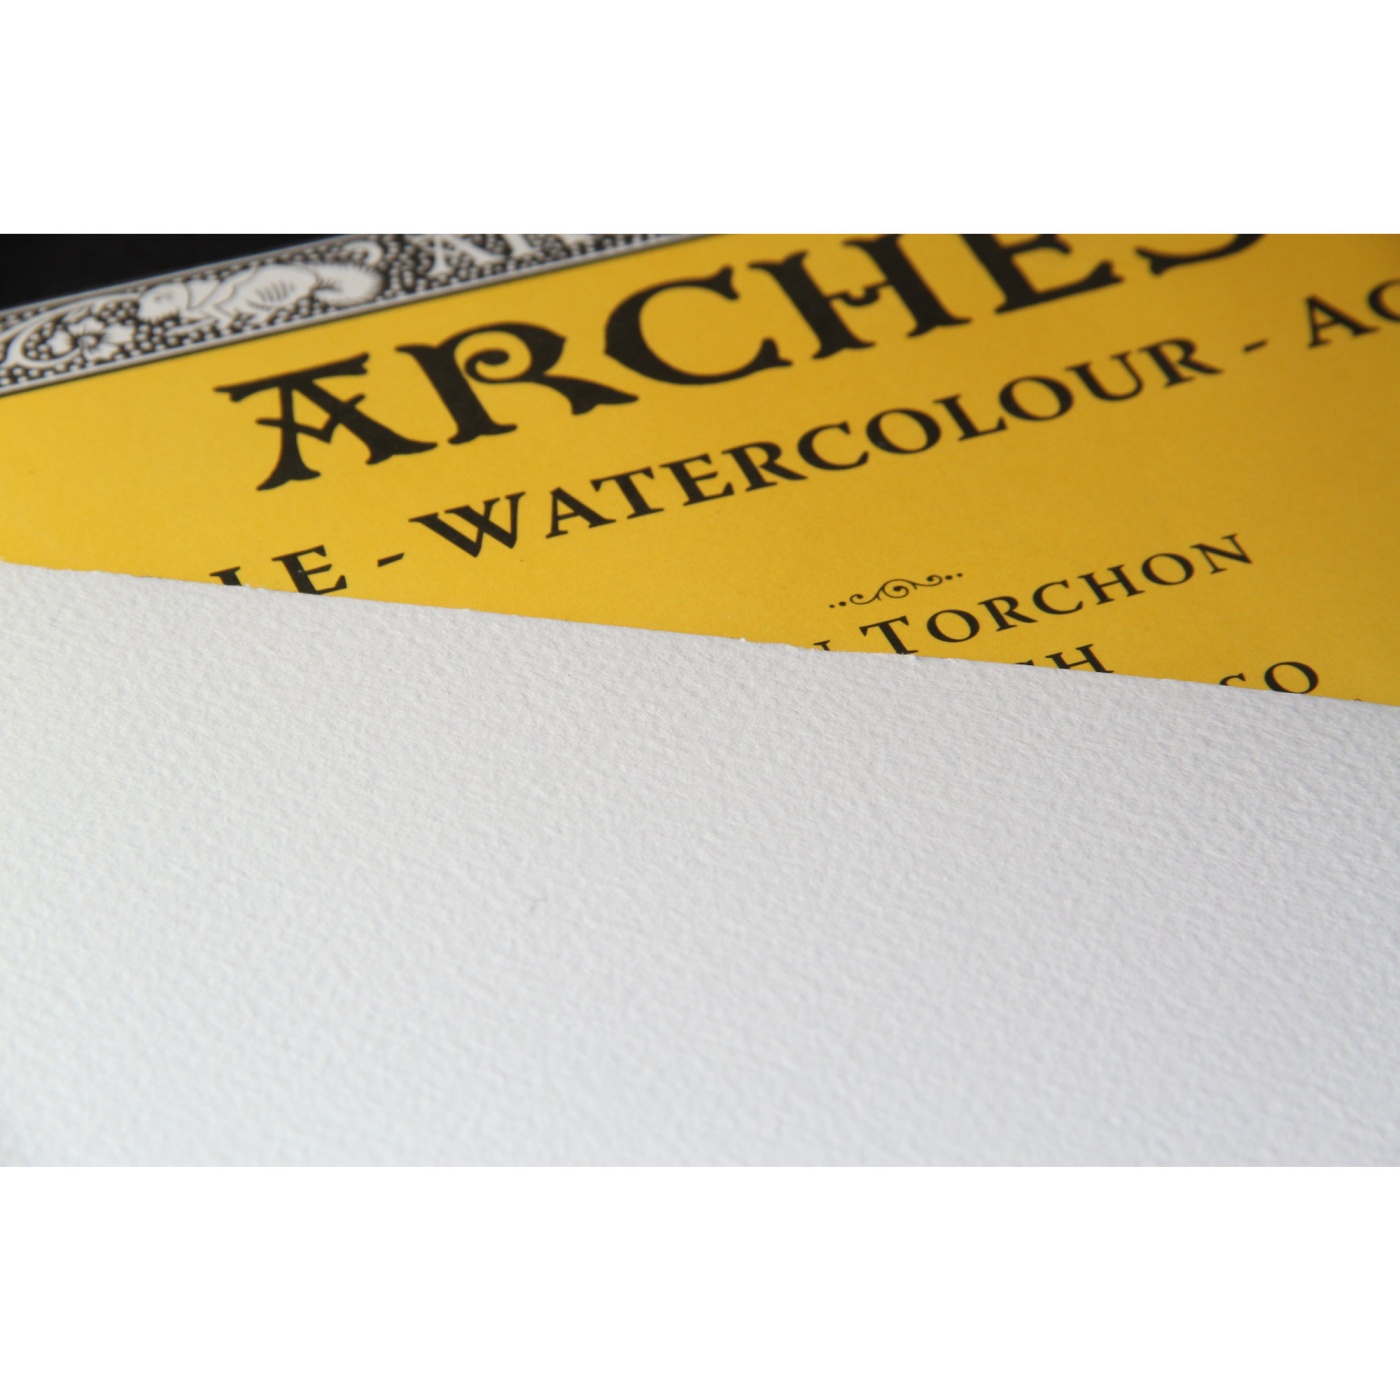 Aquarellblock Rough 300 g 18 × 26 cm in der Gruppe Papier & Blöcke / Künstlerblöcke / Aquarellpapier bei Pen Store (101524)